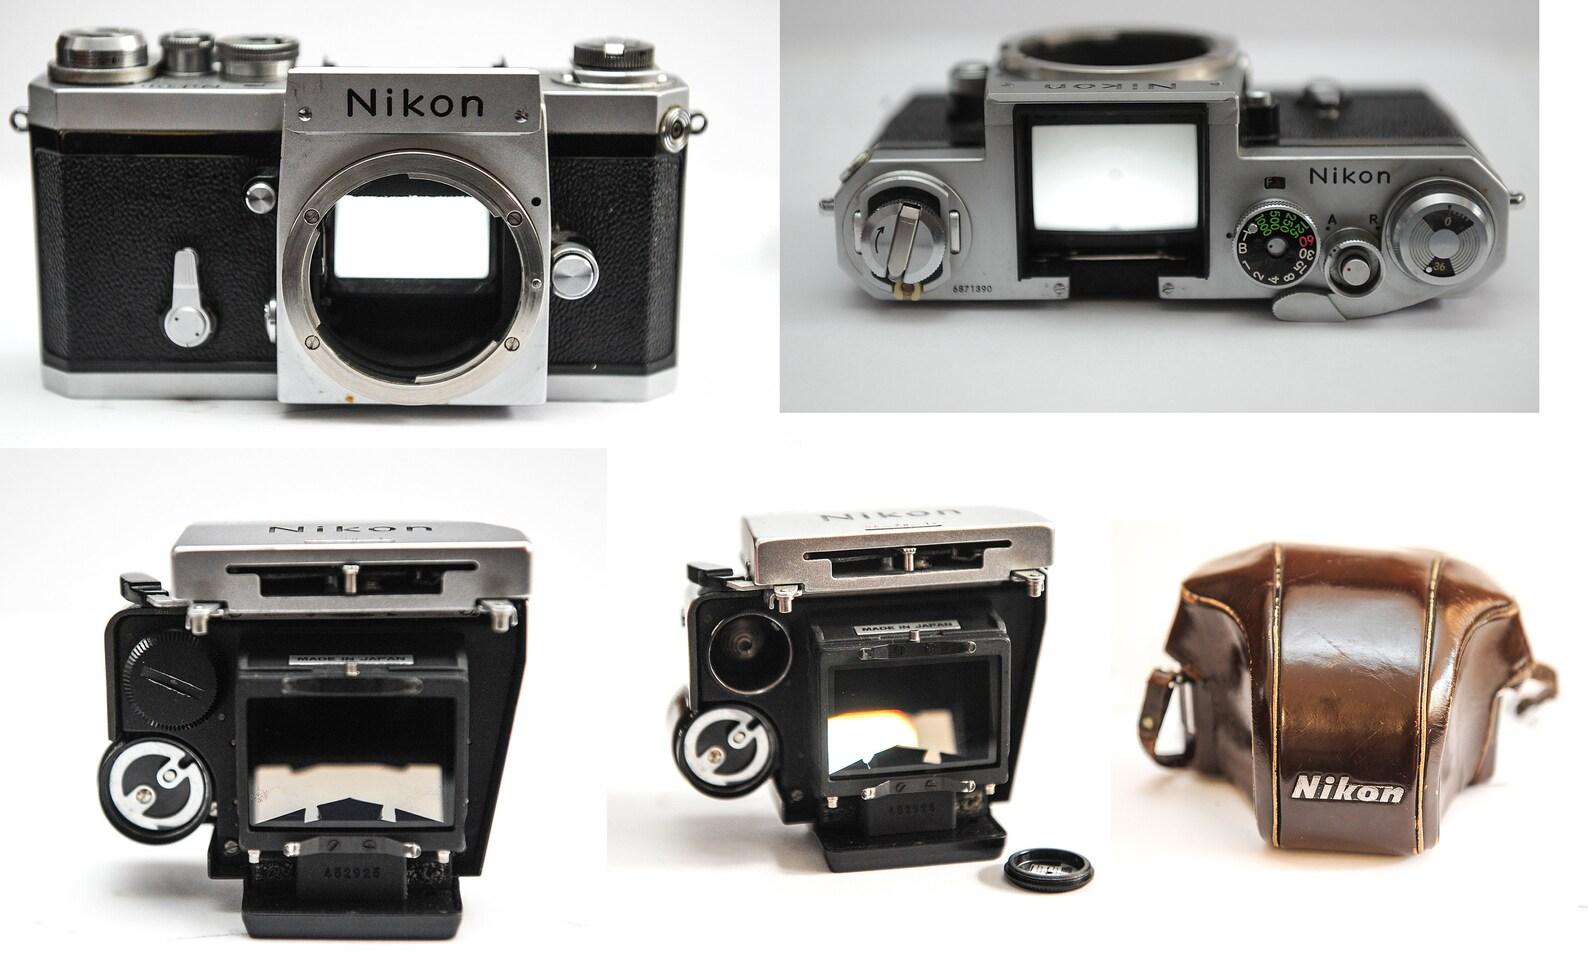 Nikon's Photomic FTn 35mm Spiegelreflexkamera mit Nikkor-H 50mm Prime Objektiv F2.0 mit braunem Ever Ready Koffer

Großartige Verarbeitungsqualität, schwere Kamera, hergestellt in Japan.

In gutem Betriebszustand
Das Kameragehäuse weist leichte